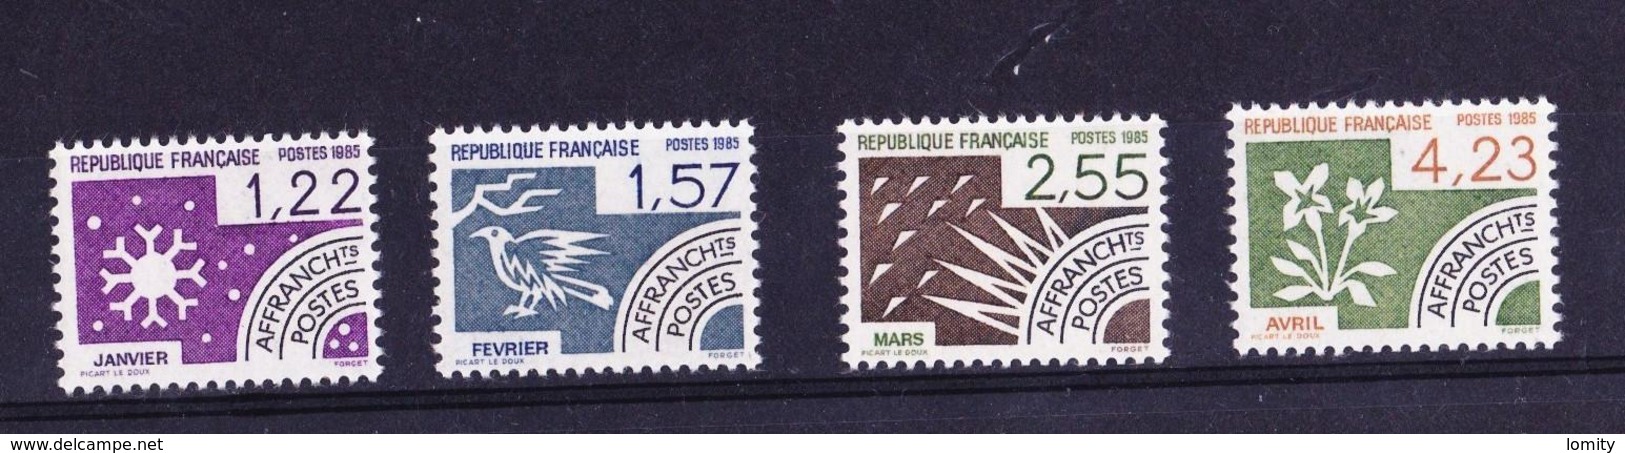 France Preo Preoblitété 1985 Serie Complète Neuve **  N° 186 à 189 Cote 6.50€ - 1989-2008